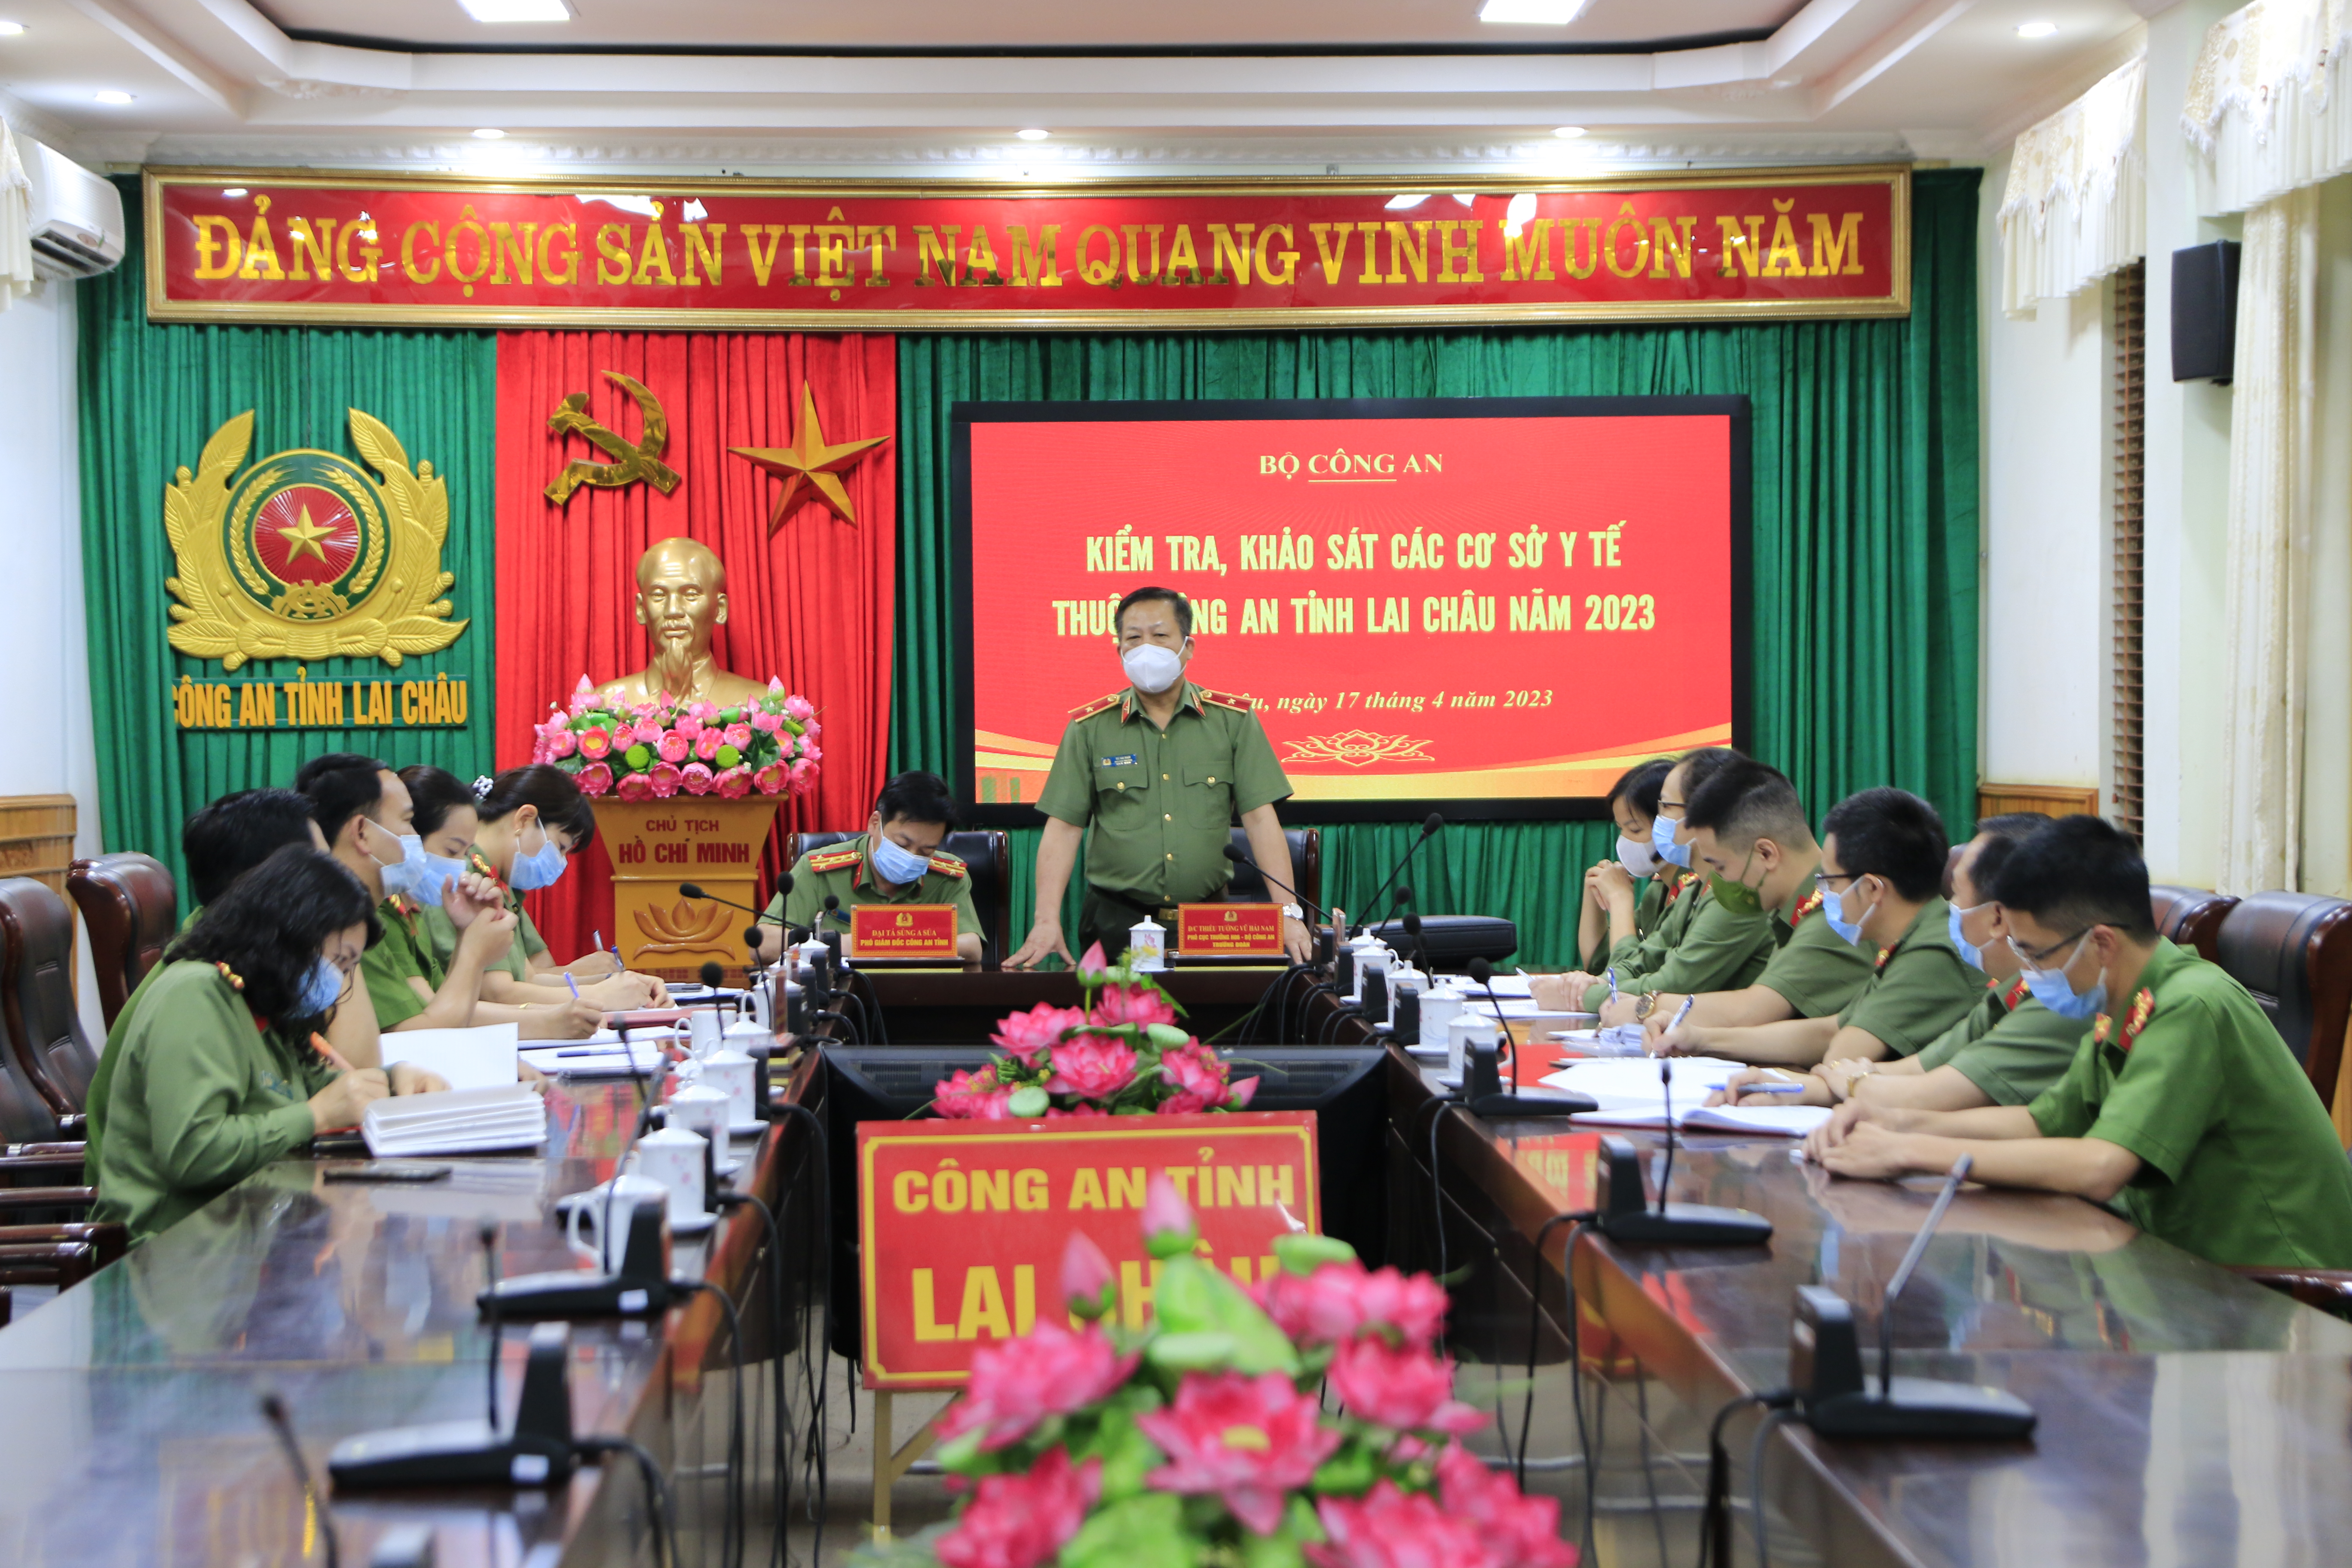 Đồng chí Thiếu tướng Vũ Hải Nam, Phó Cục trưởng Cục y tế, Bộ Công an phát biểu tại buổi làm việc